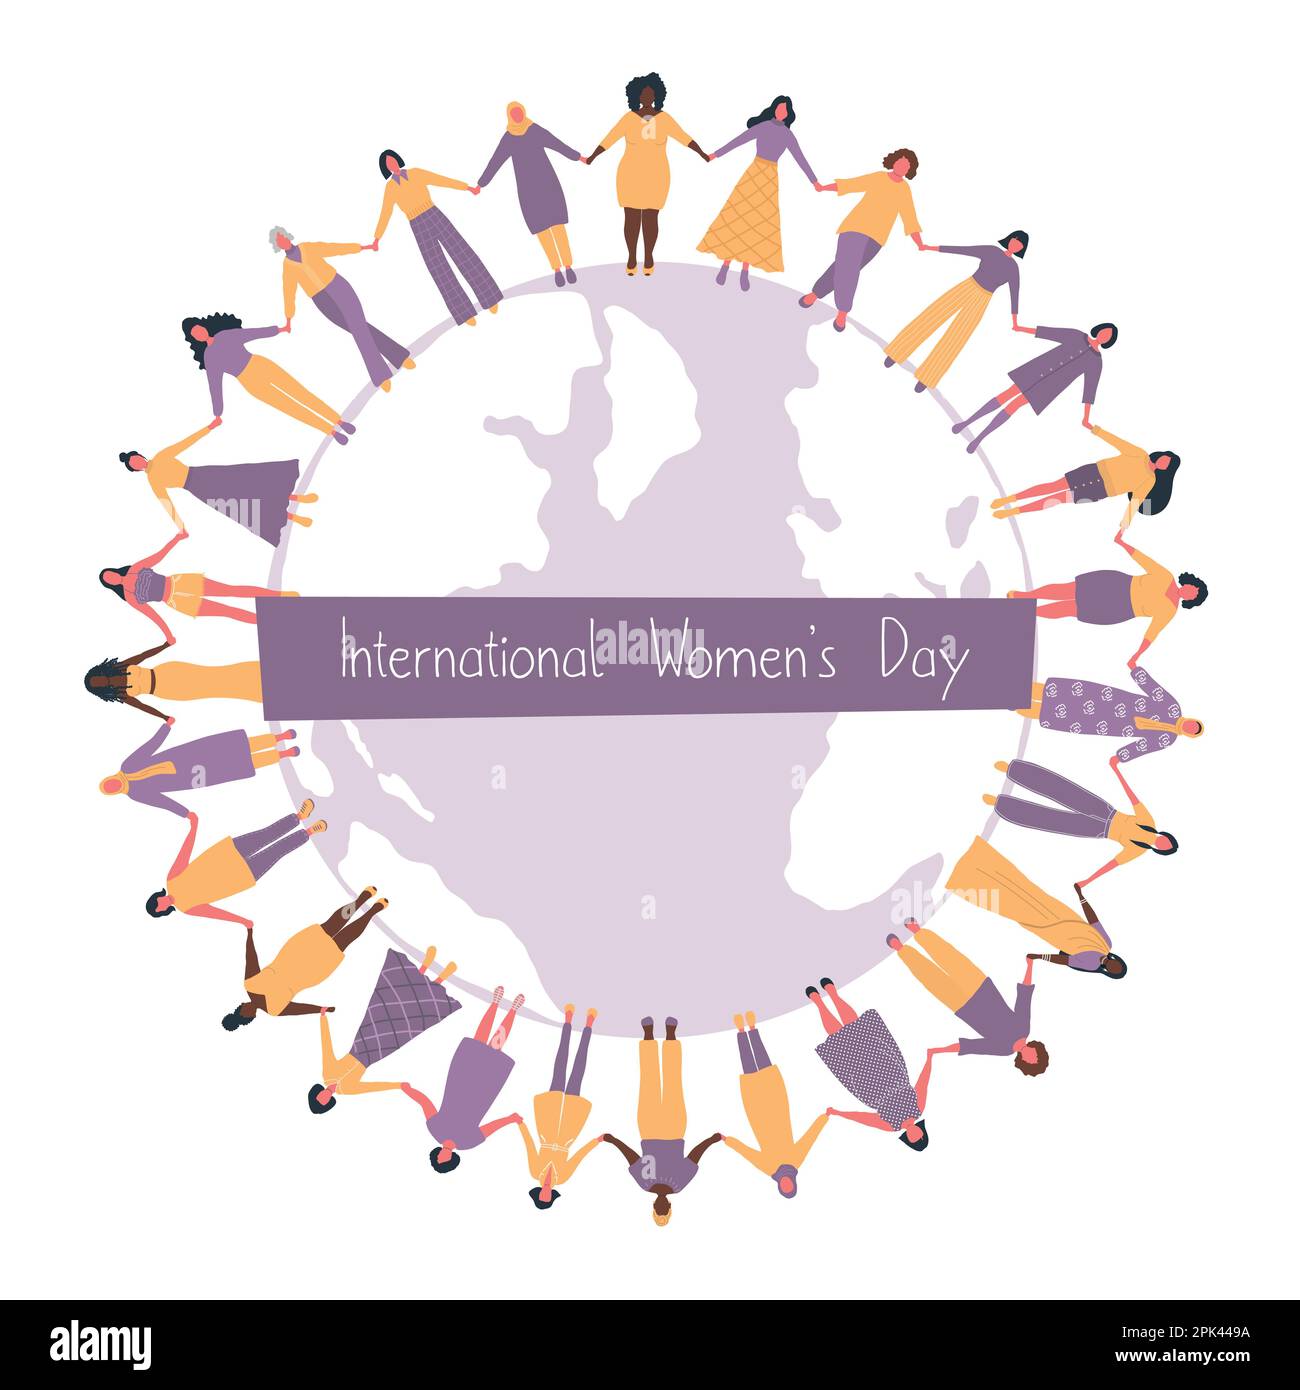 Les femmes tiennent les mains, se tiennent autour de la carte du monde. Concept de la Journée internationale de la femme. Communauté des femmes. La solidarité féminine. Groupe multiculturel Illustration de Vecteur